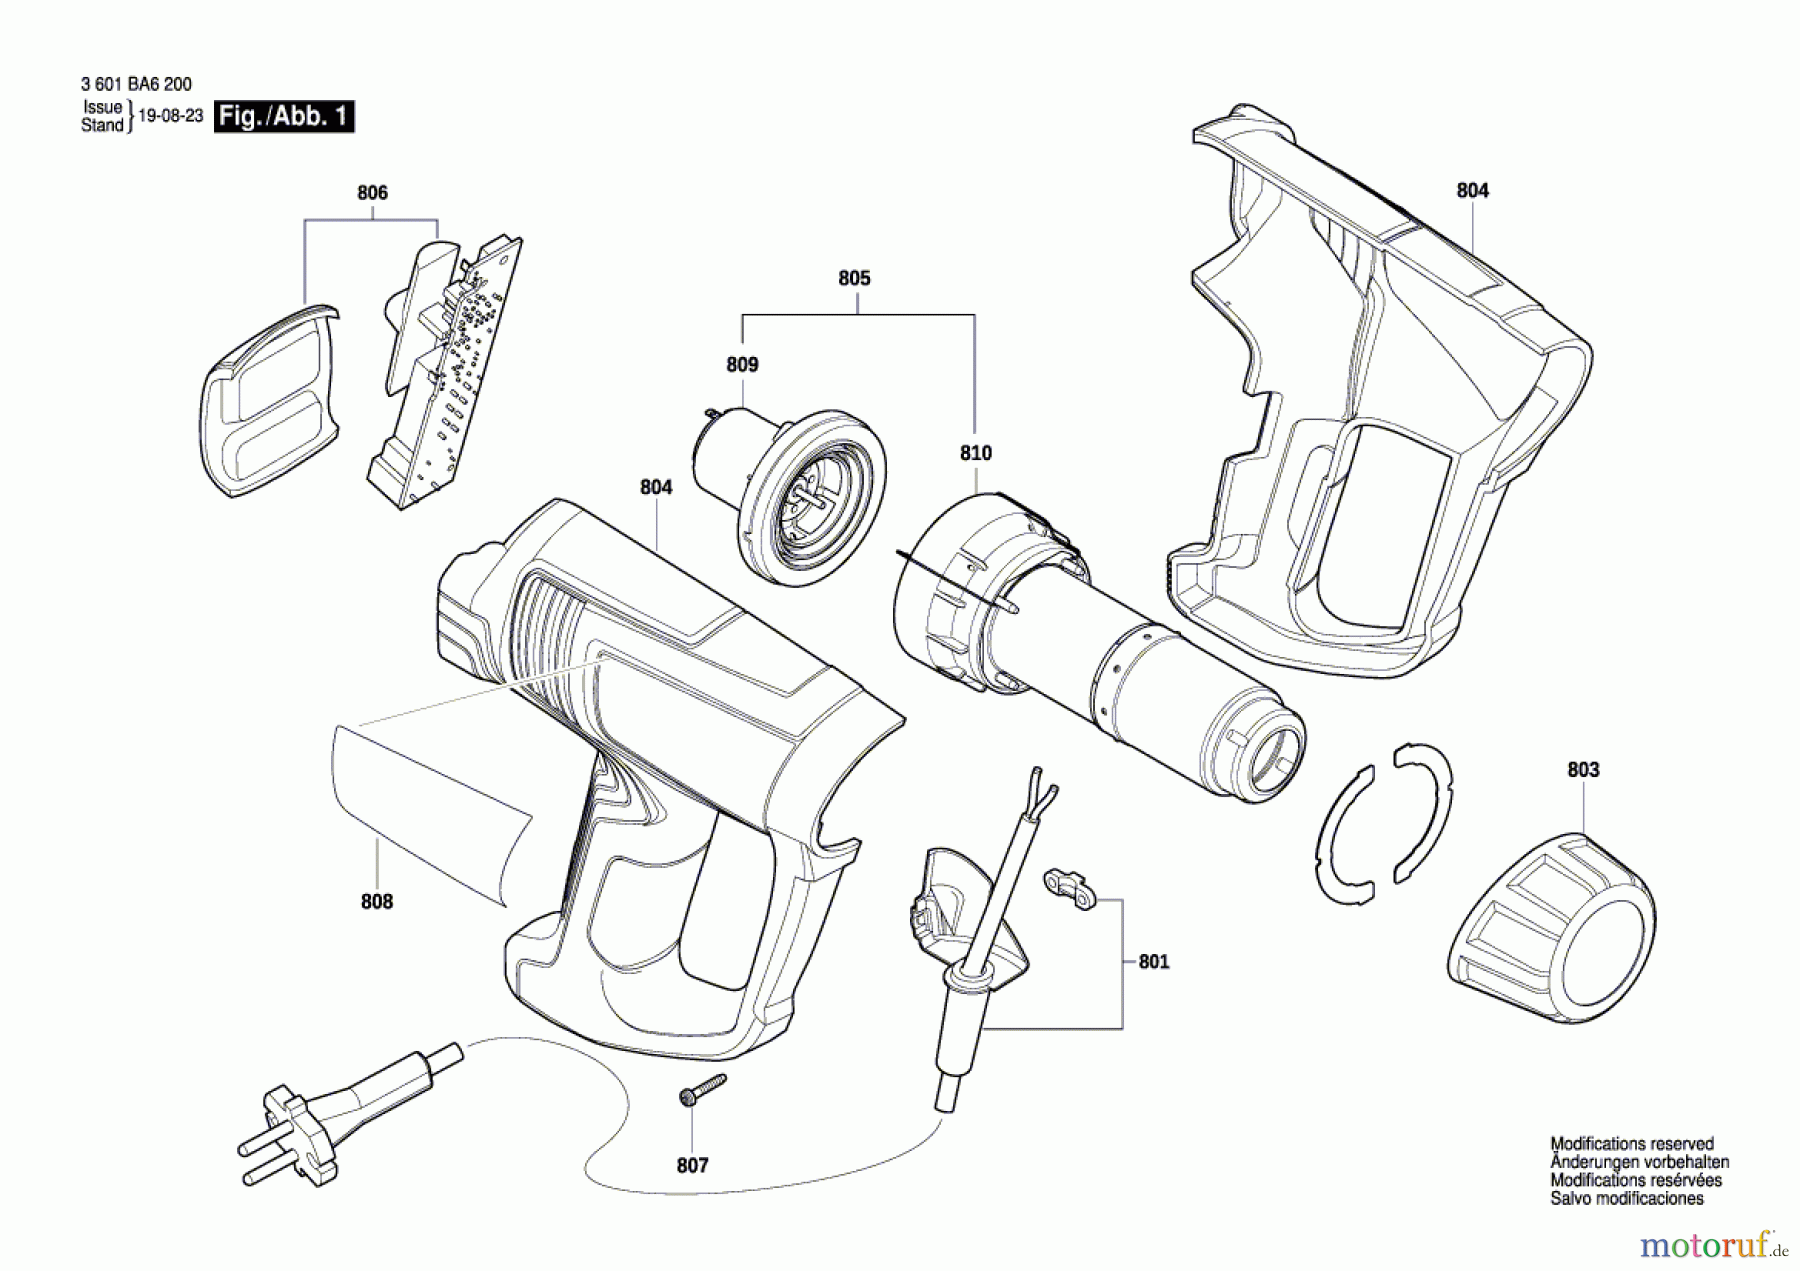  Bosch Werkzeug Heissluftgebläse GHG 20-63 Seite 1